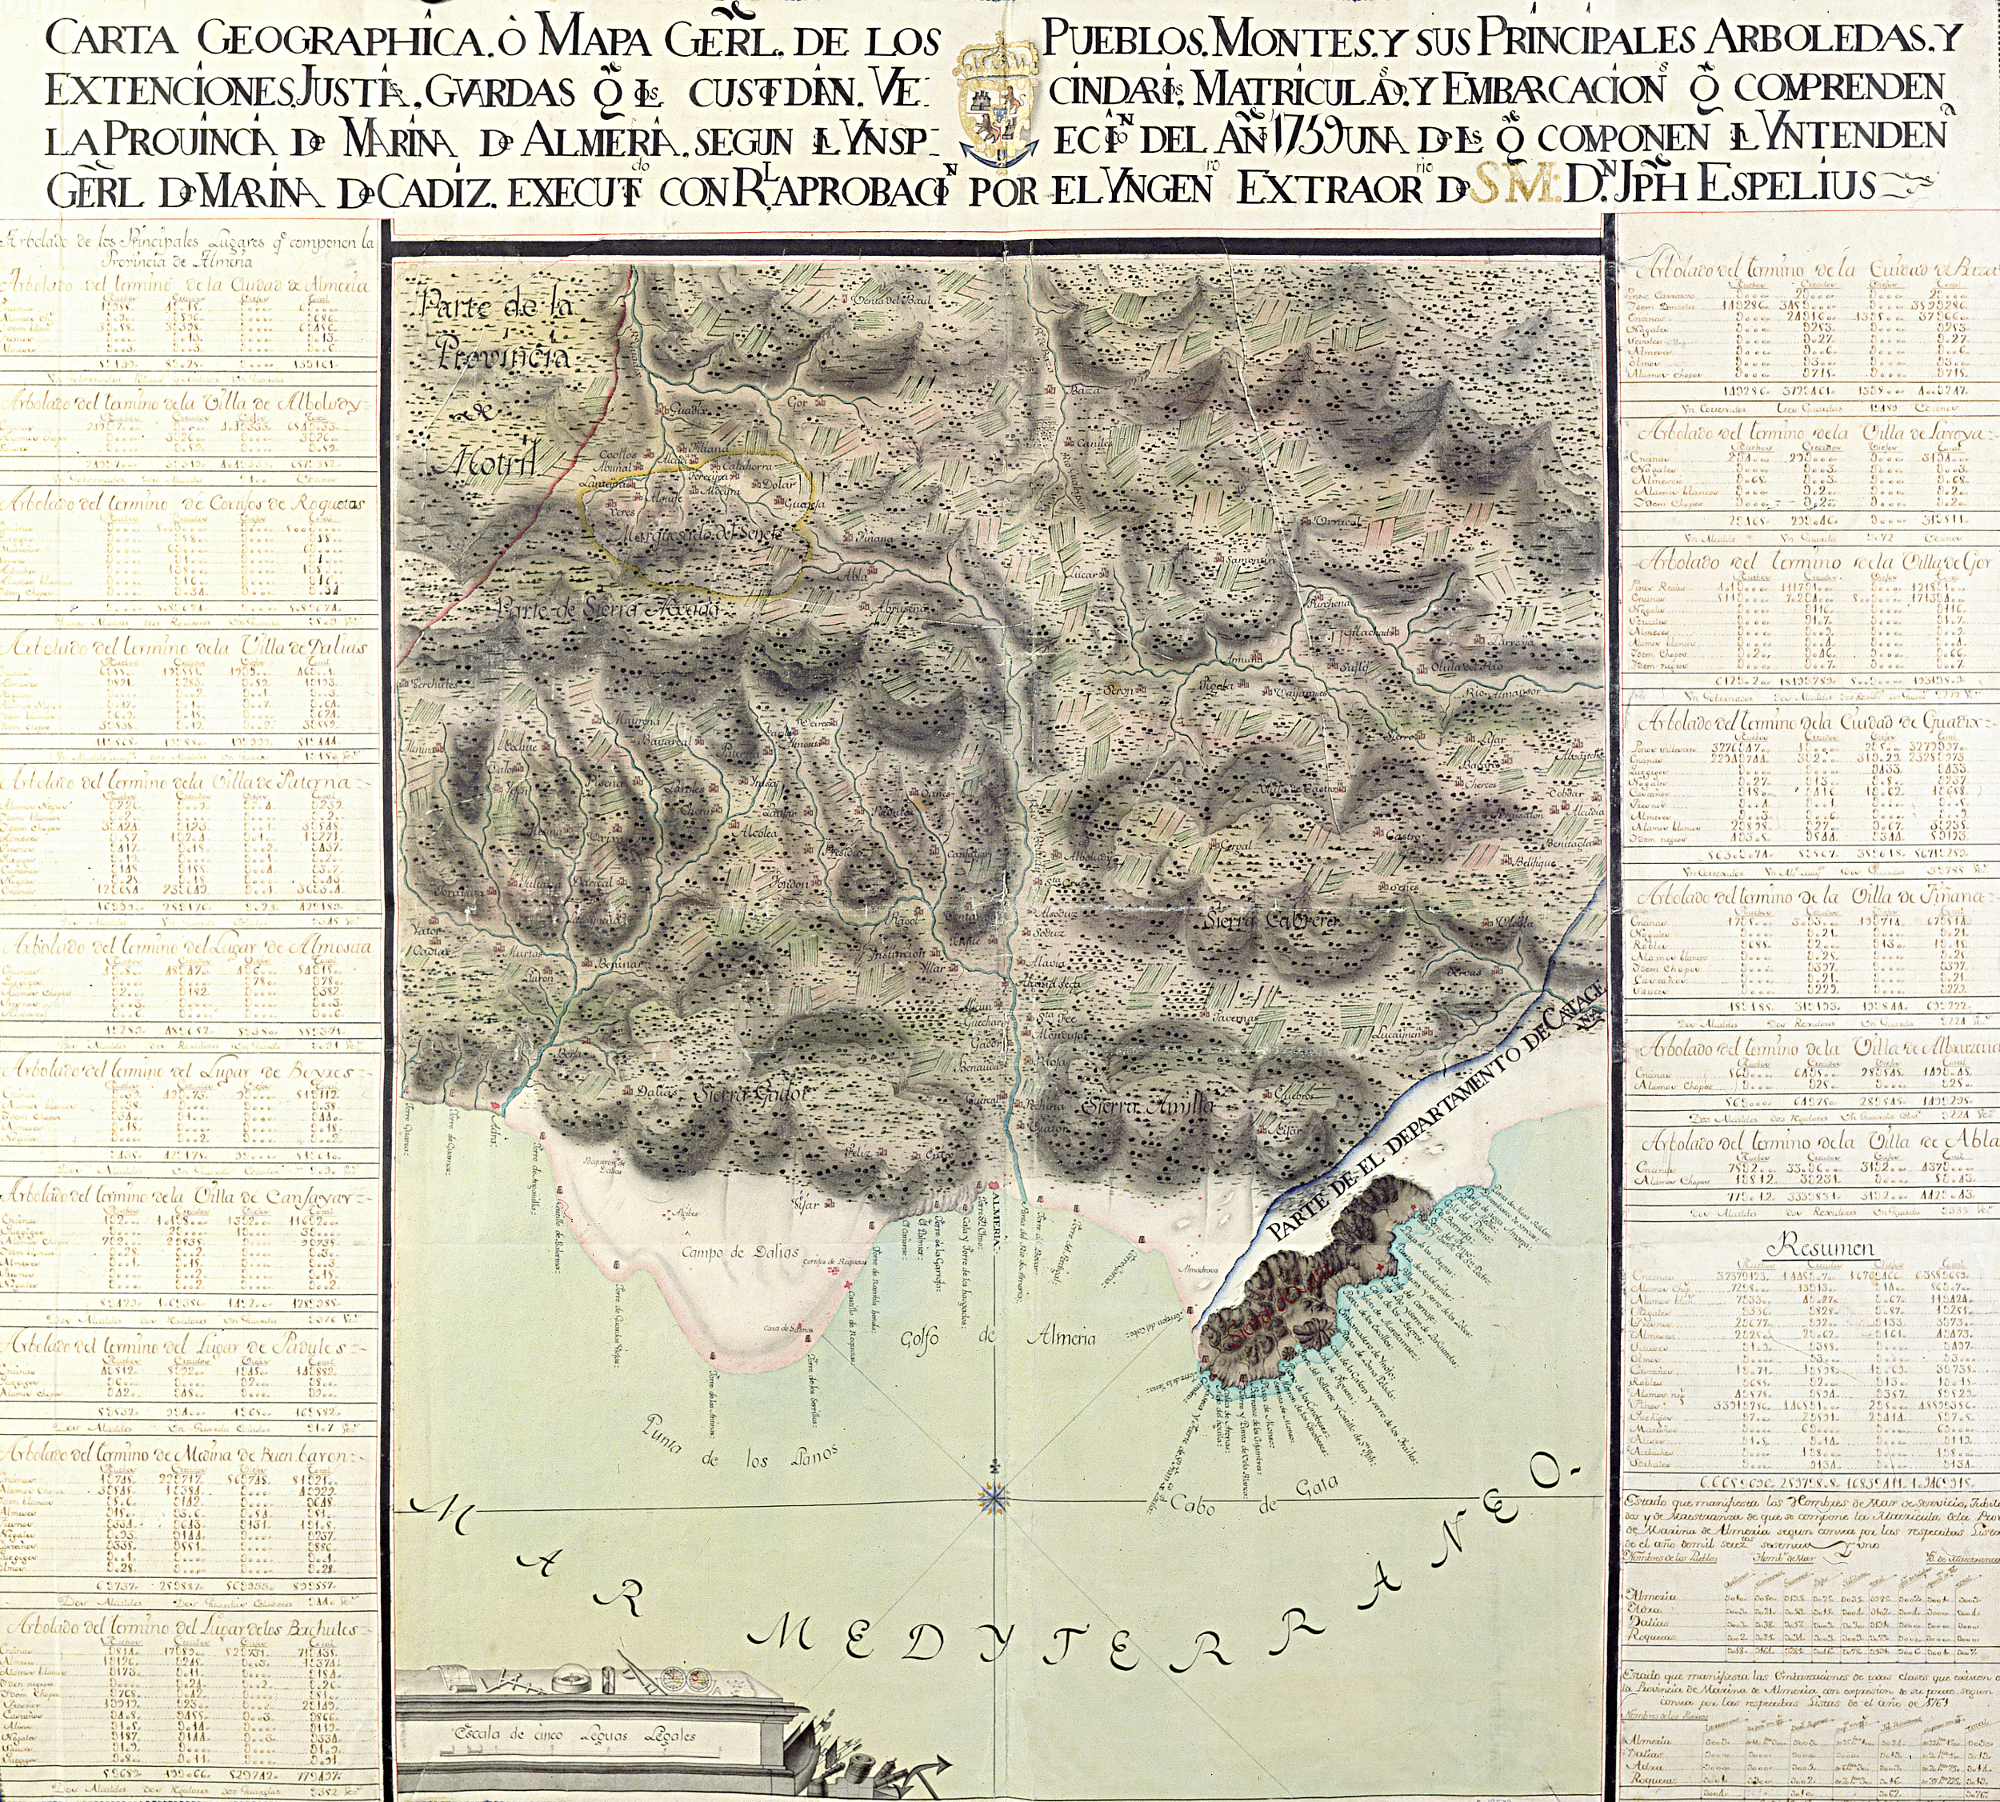 ALMERIA (Provincia). Parcial. Mapas generales. 1:127000. 1764